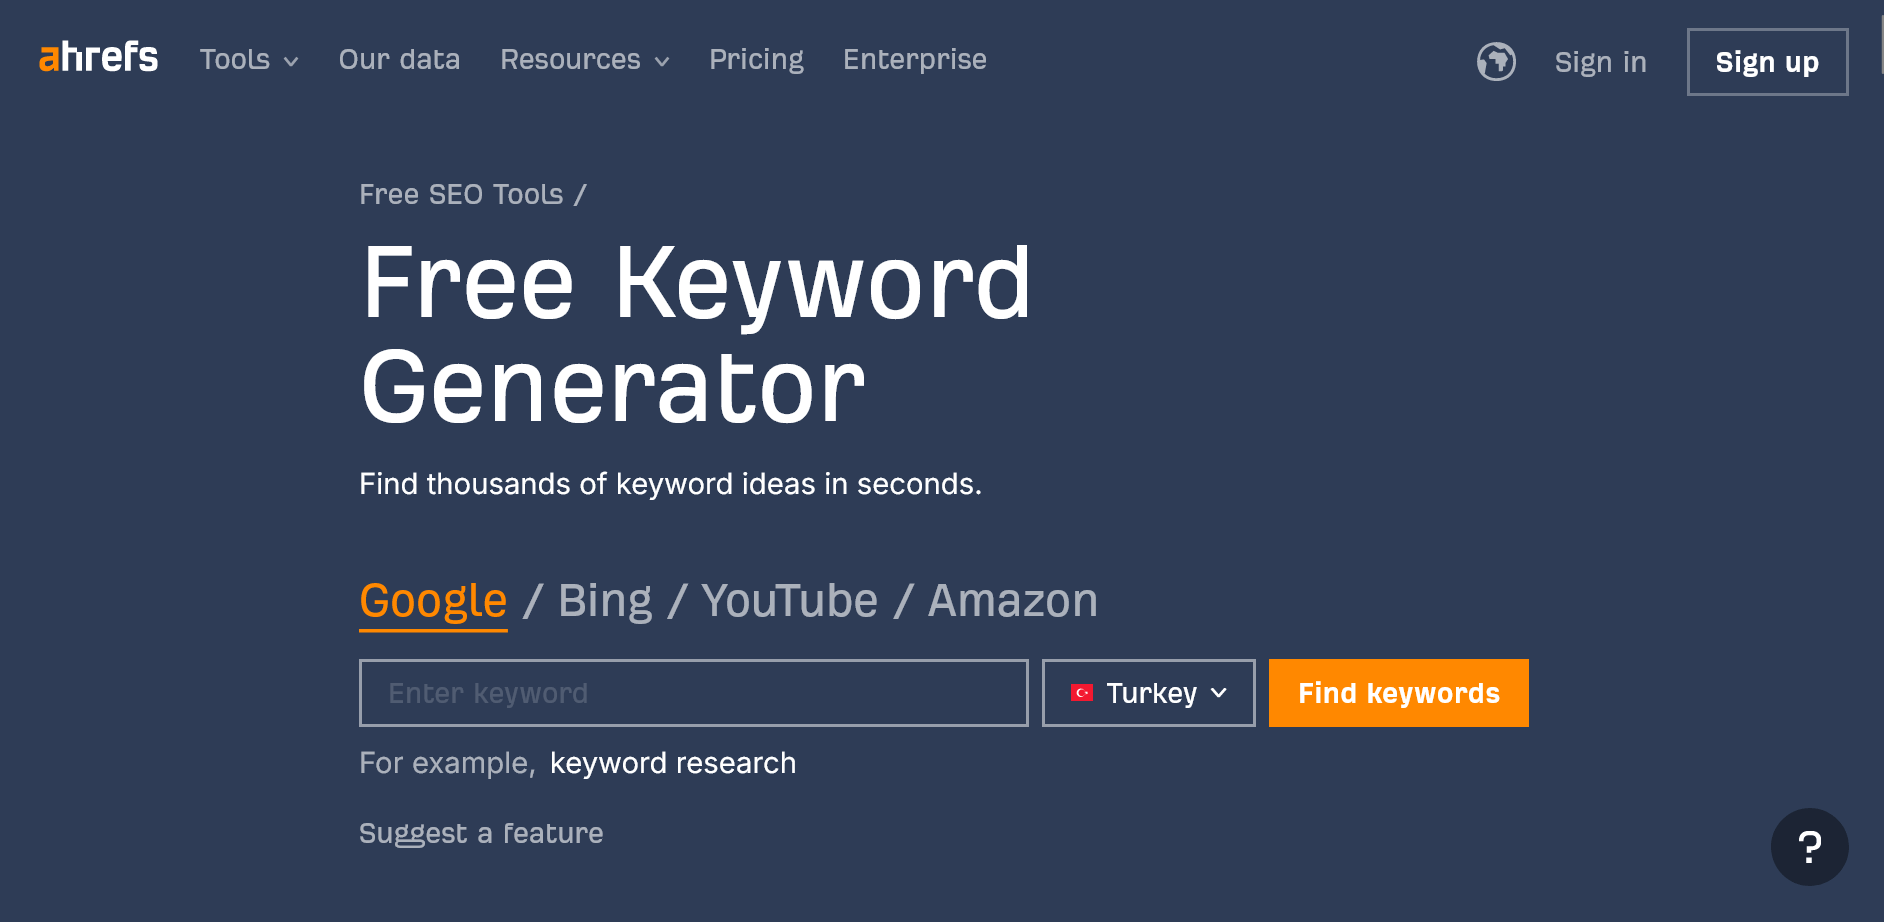 Ahrefs Free Keyword Generator